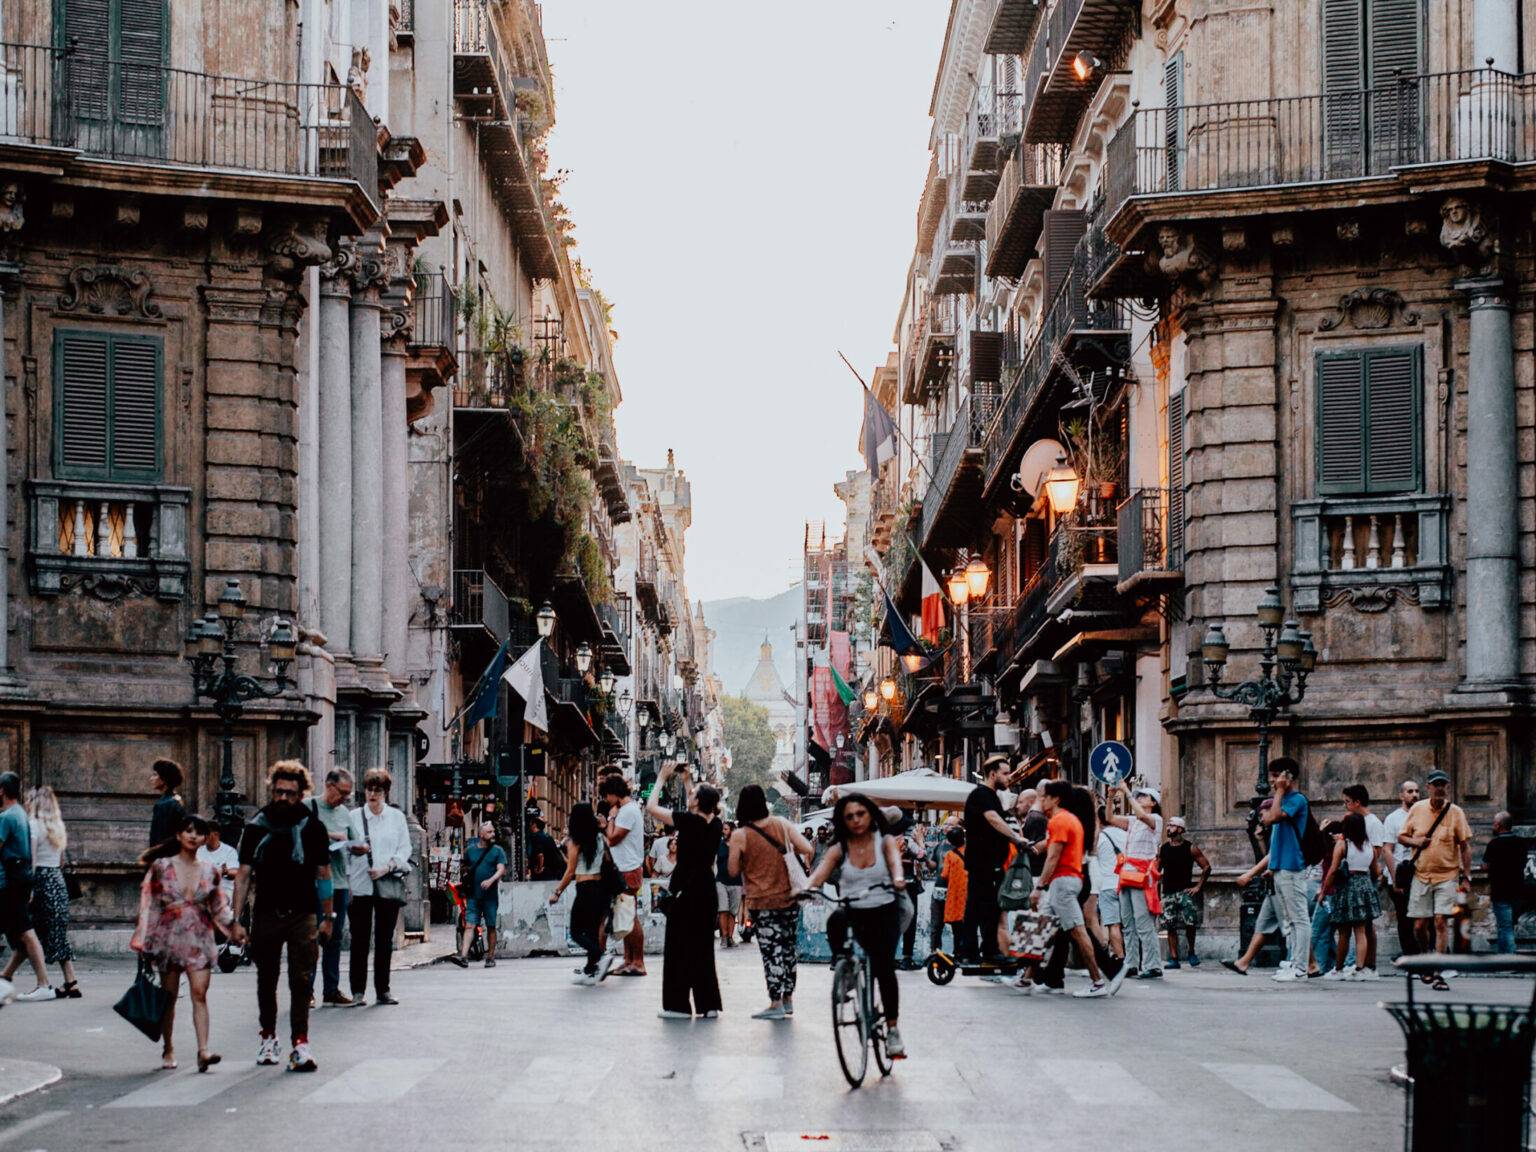 Eine wuselige Kreuzung in Mitten der Stadt Palermo, viele Menschen tummeln sich auf den Straßen.